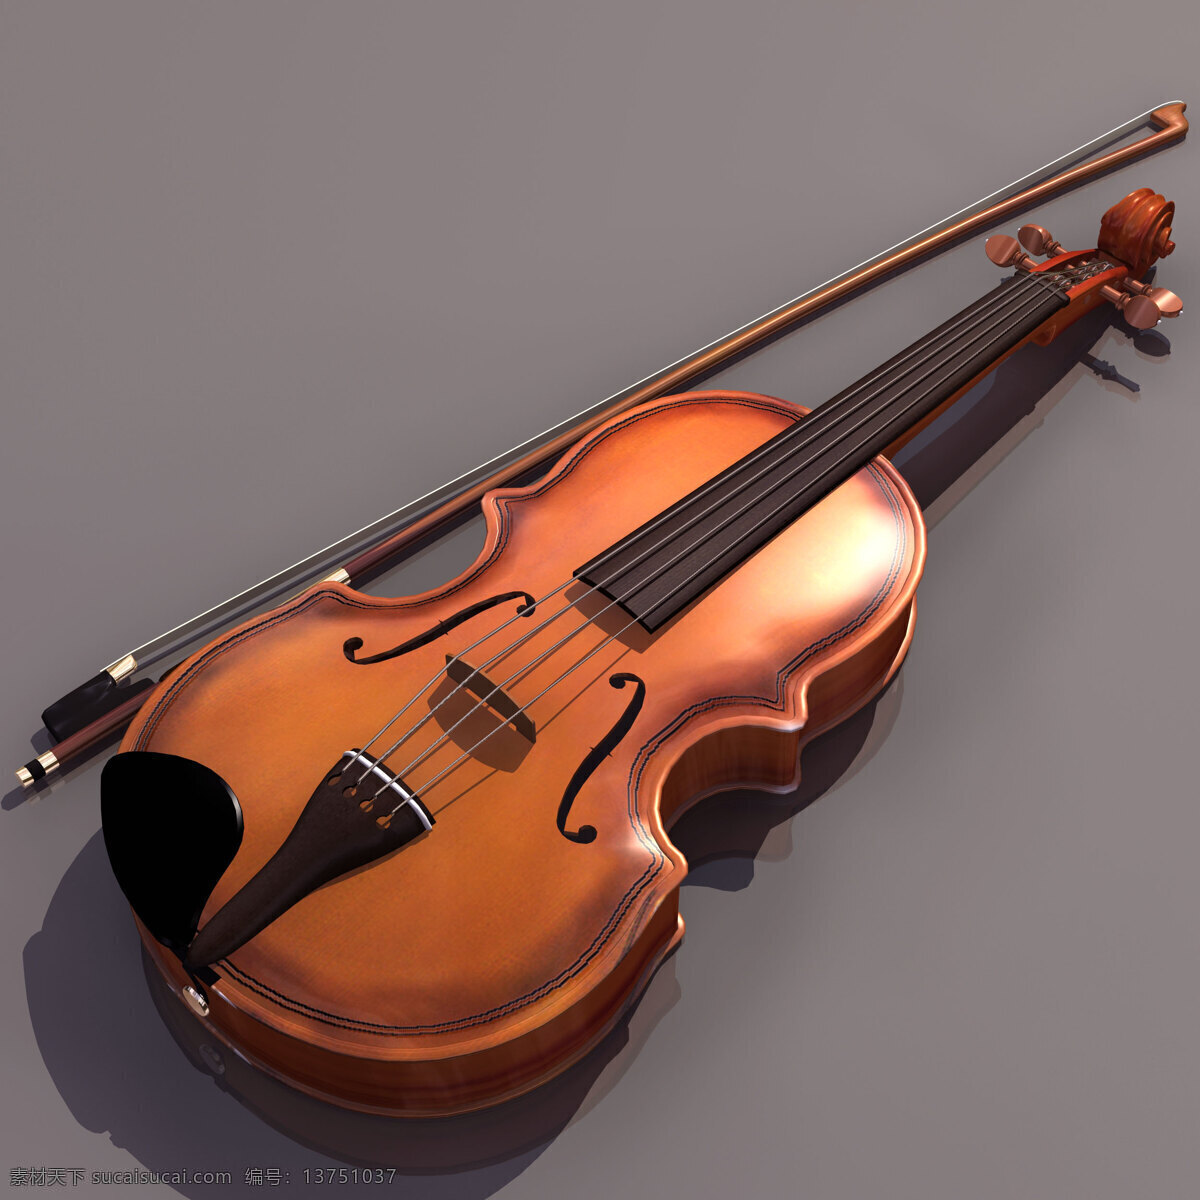 小提琴 乐器 模型 violin 文化用品 乐器模型 3d模型素材 电器模型